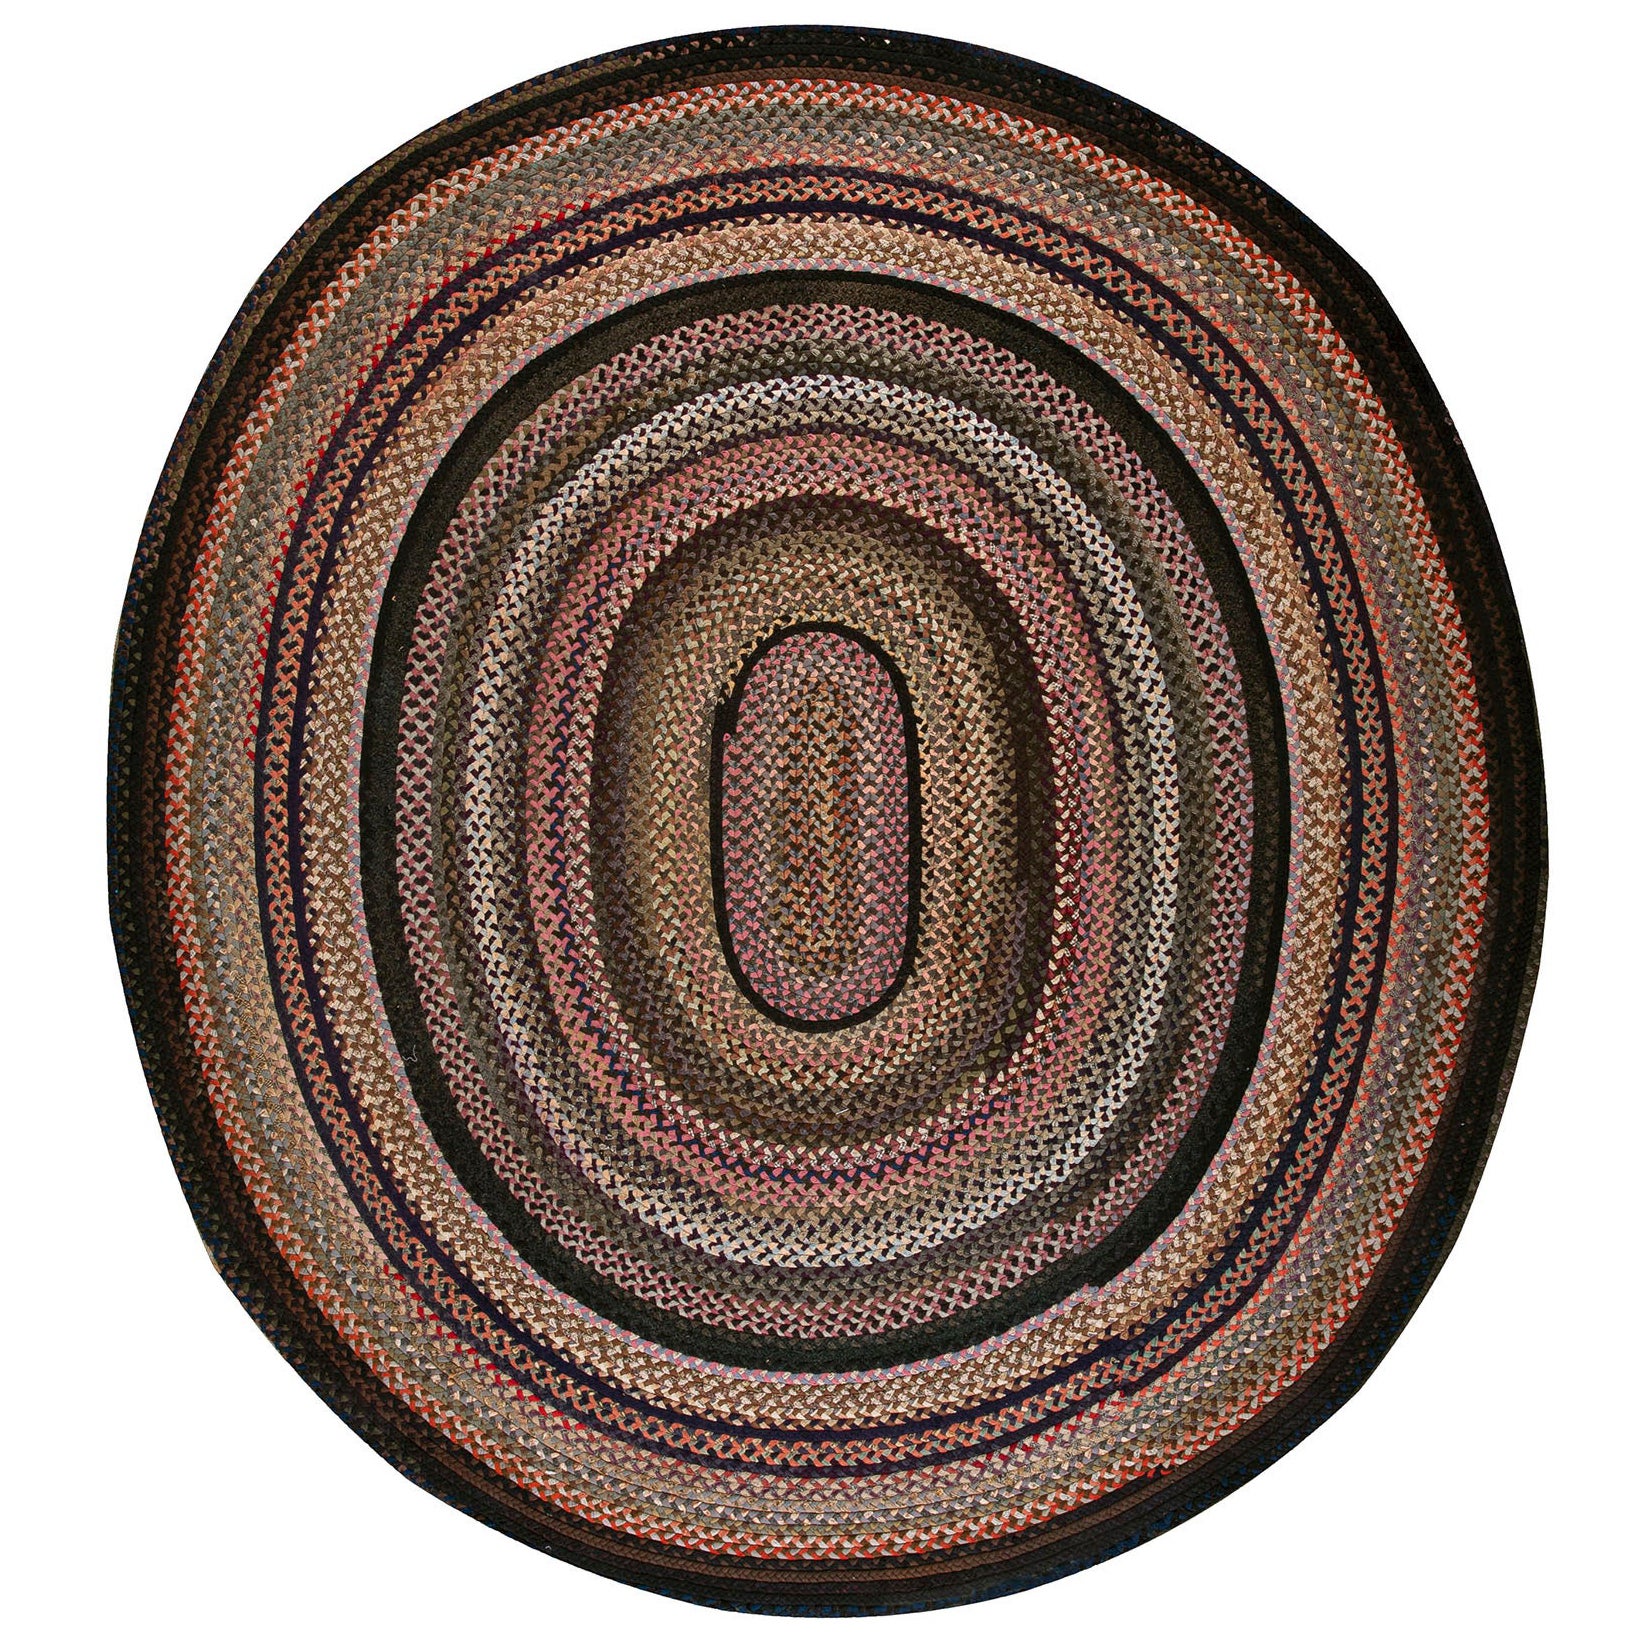 Amerikanischer geflochtener Teppich aus den 1930er Jahren ( 8''10 x 9''9 - 270 x 297 cm) 